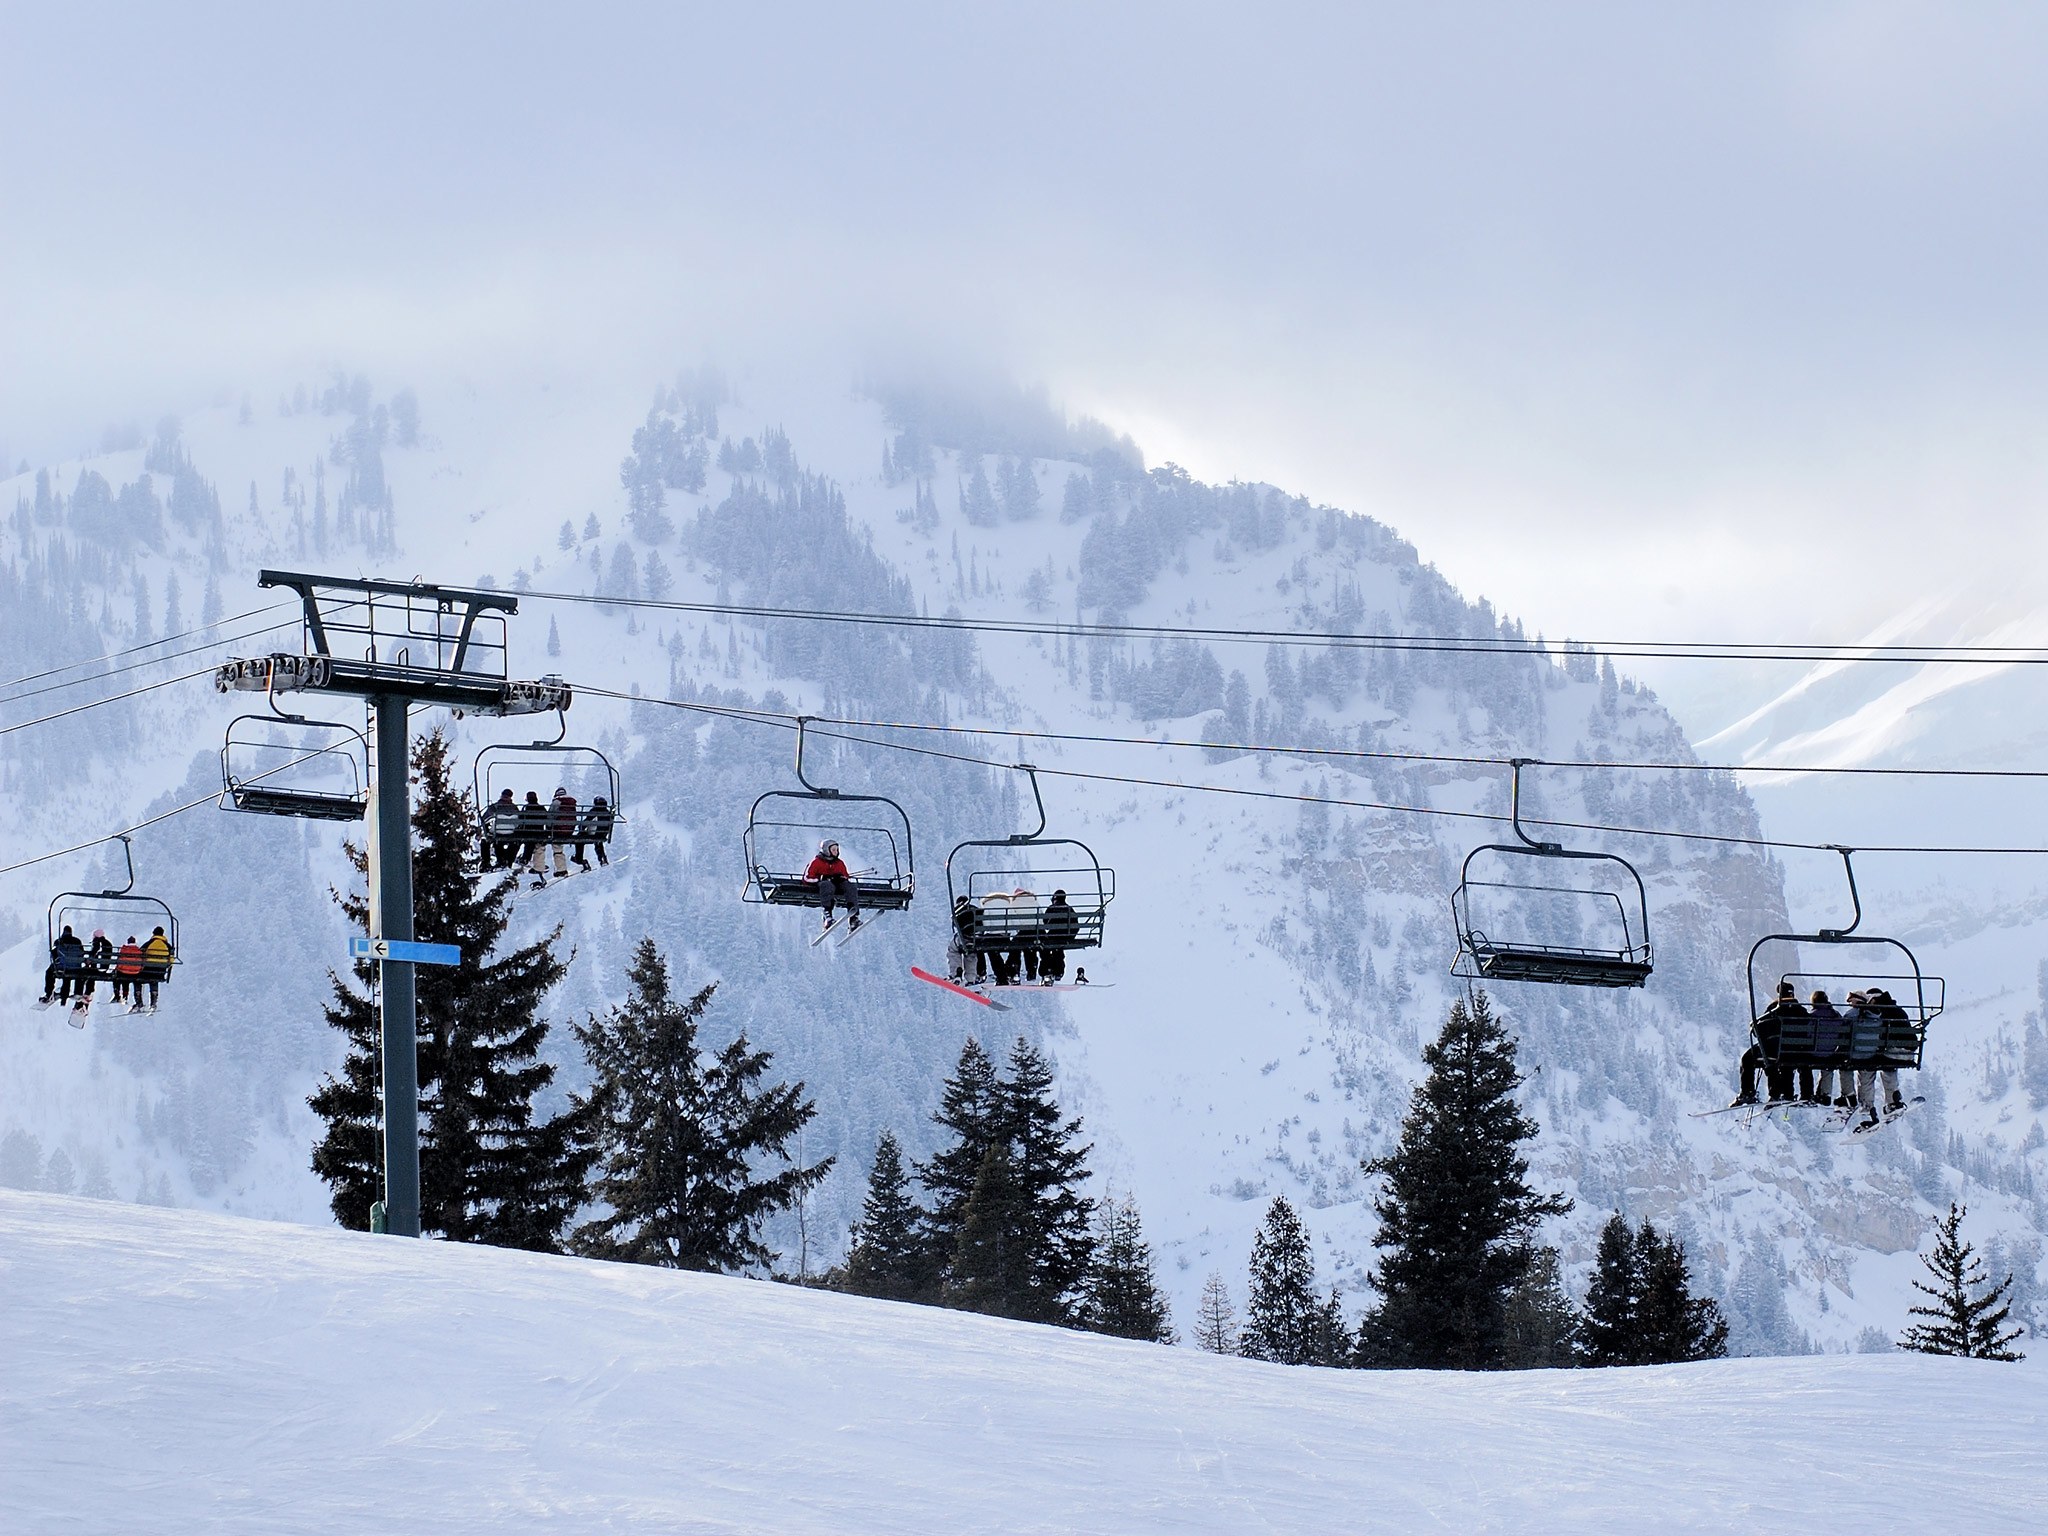 Skiing resort photo